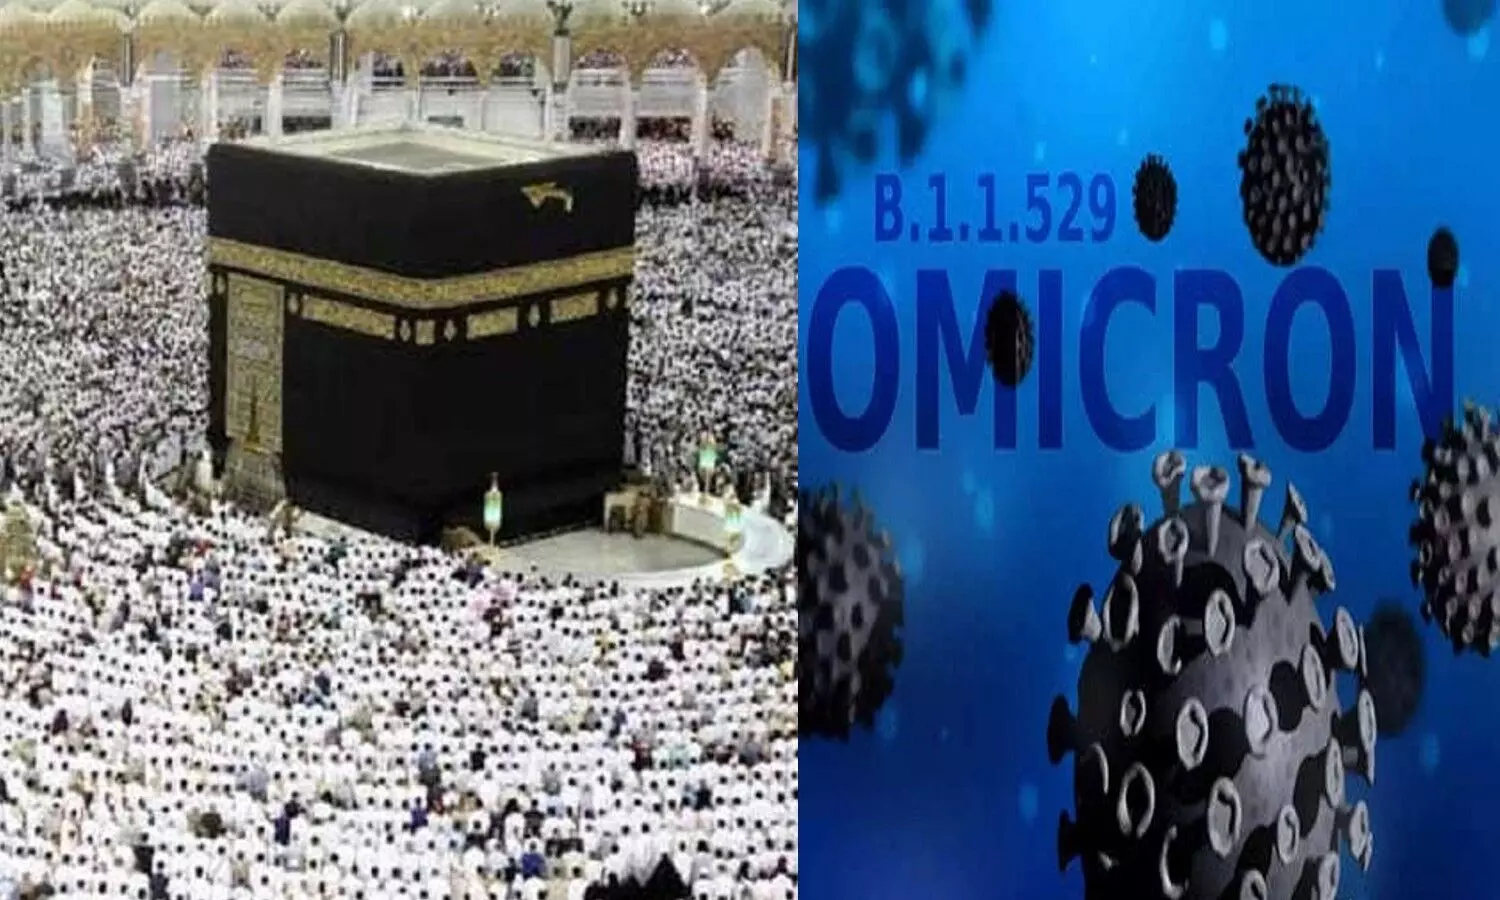 Saudi Arabia Makka Madina: सउदी अरब में ओमीक्रॉन का कहर, मक्का मदीना में फिर से कोरोना प्रोटोकॉल लागू